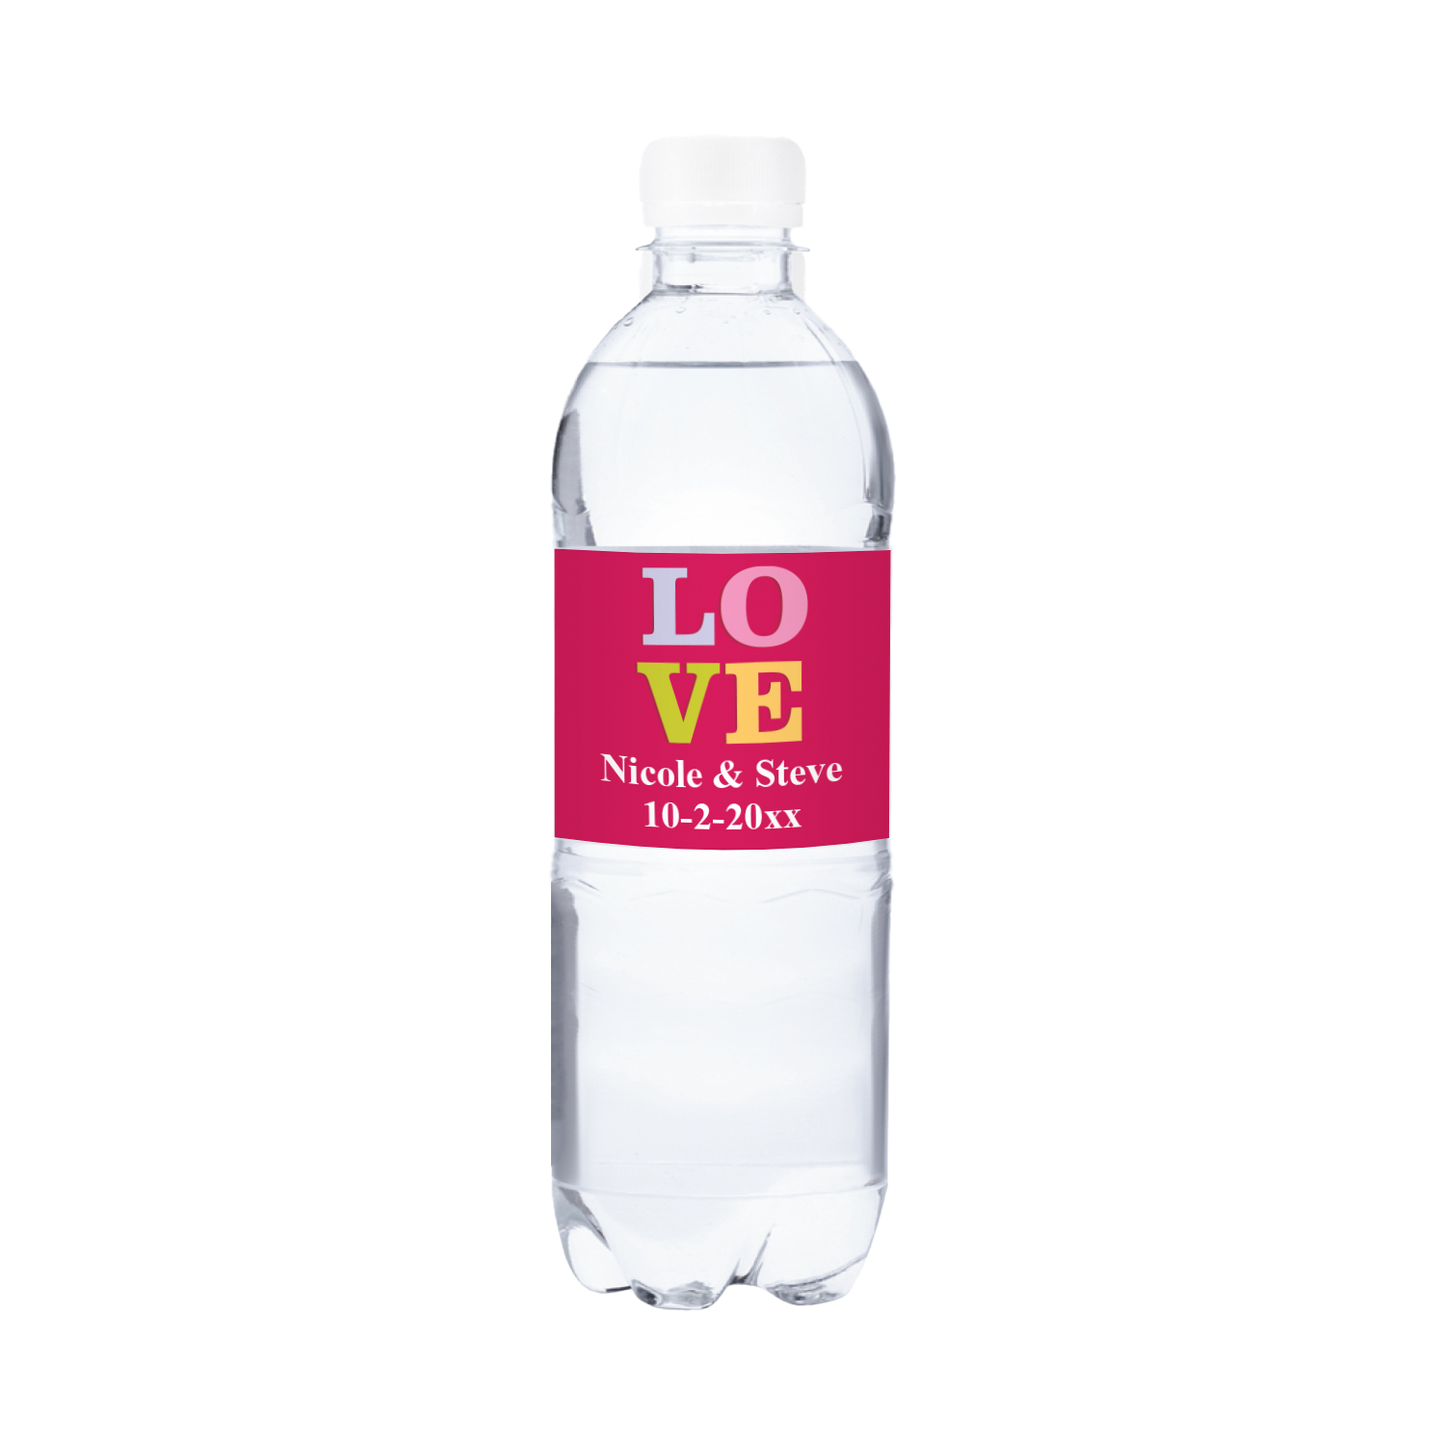 LOVE Wedding Waterproof Personalized Water Bottle Labels (set of 15)